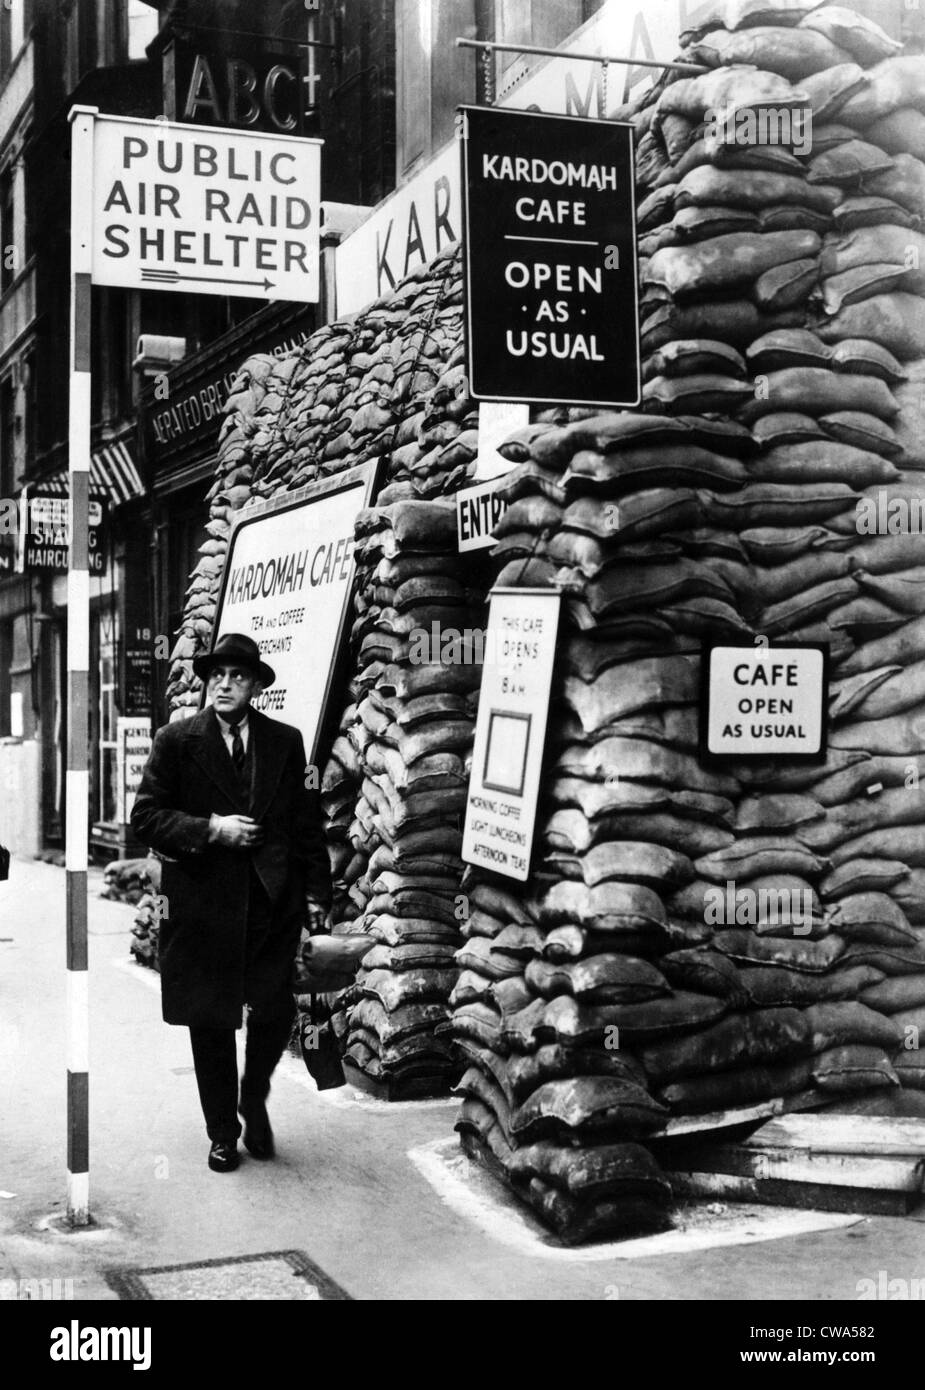 La cafetería Kardomah, equipado como un refugio antiaéreo como atracción durante la guerra, Fleet St, Londres, Inglaterra, 15 de noviembre Foto de stock